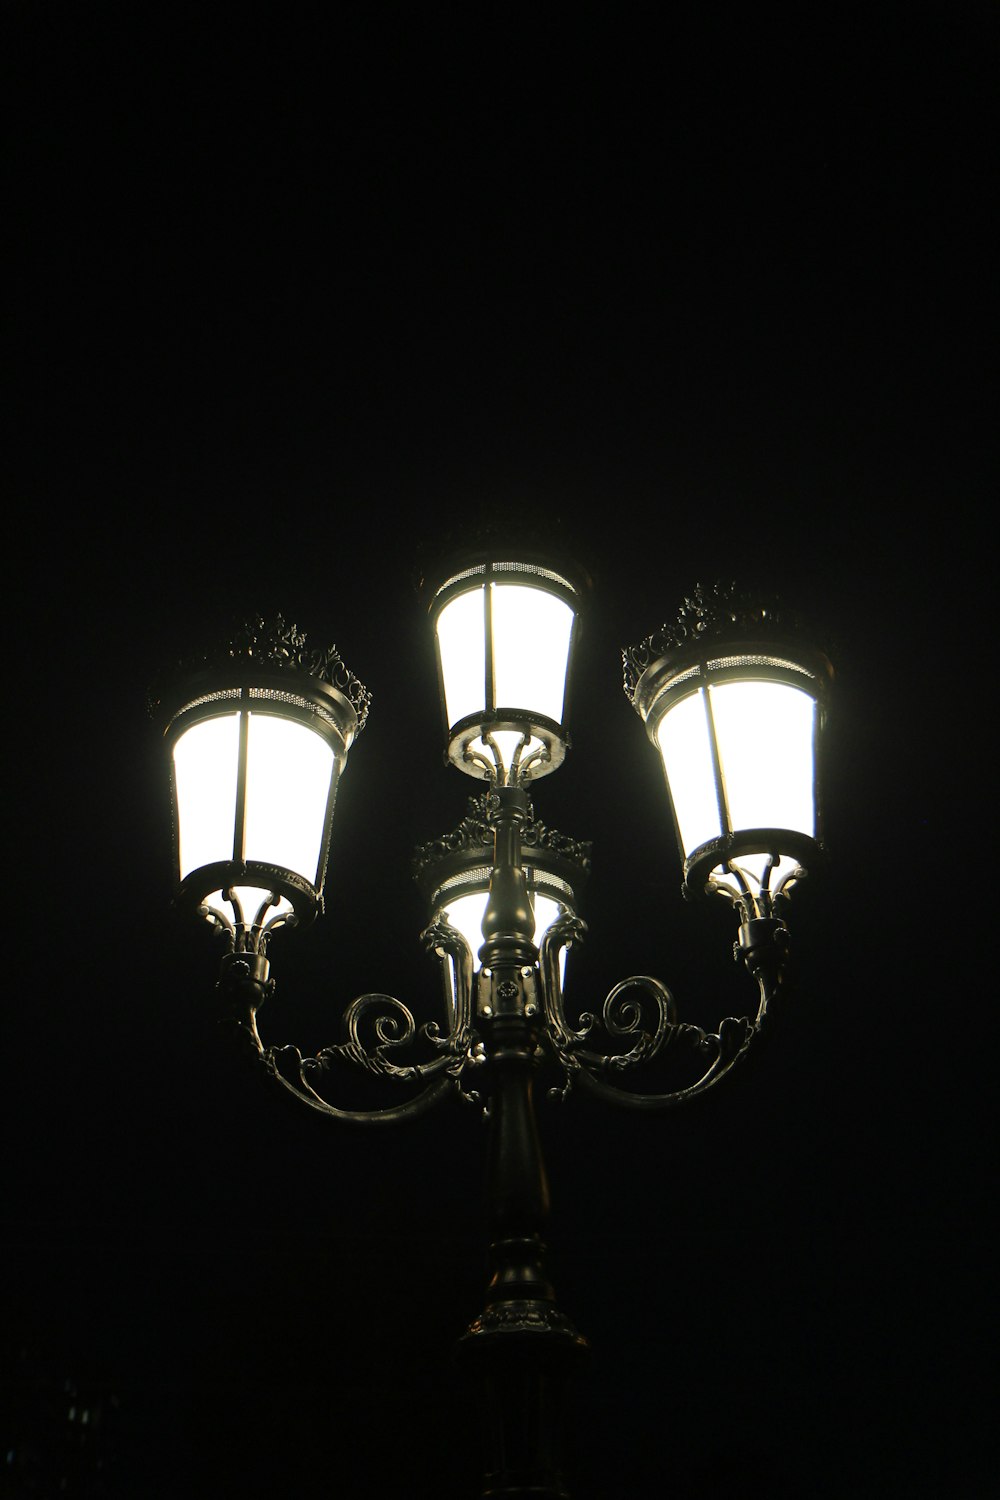 両側に3つのライトがある街路灯